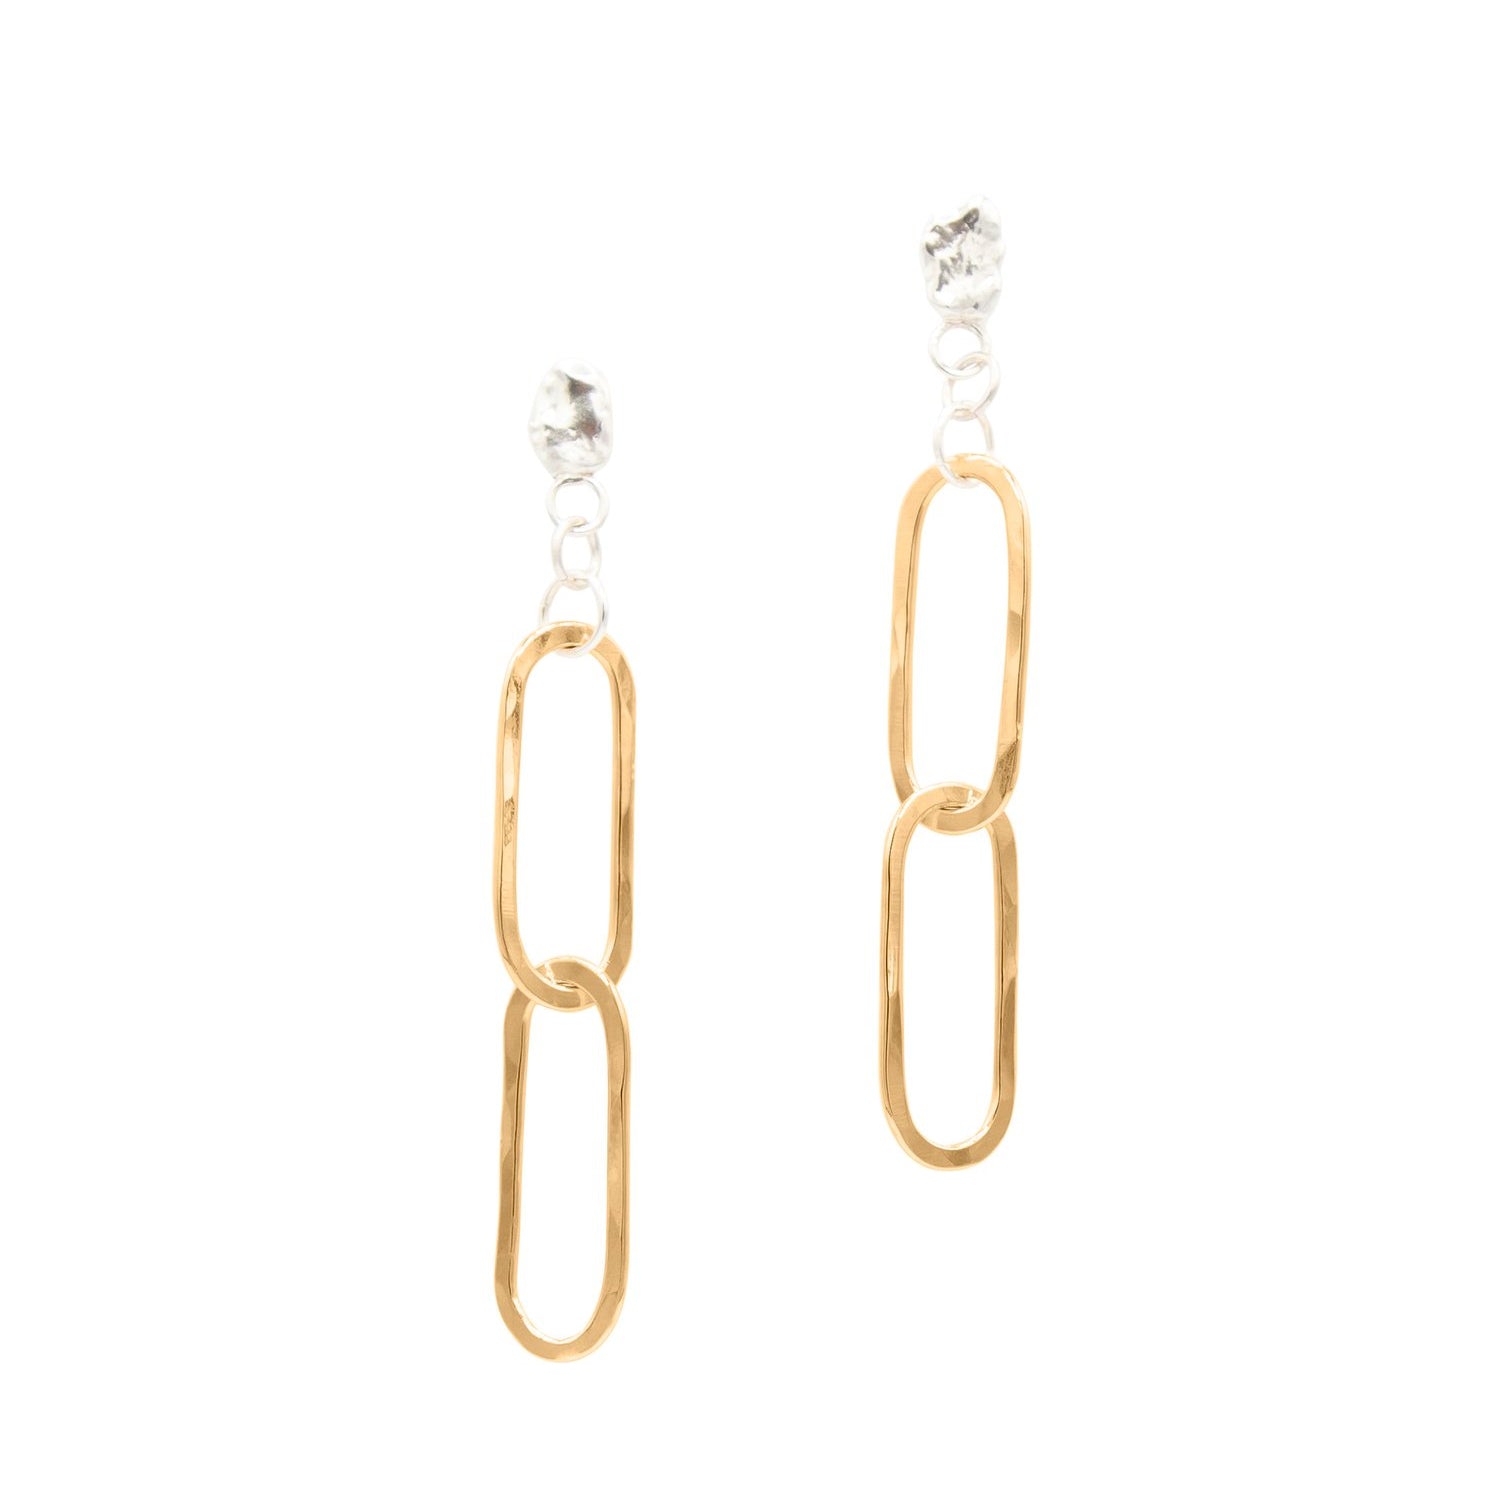 SUN & SELENE handcrafted rolo link earrings in gold fill 